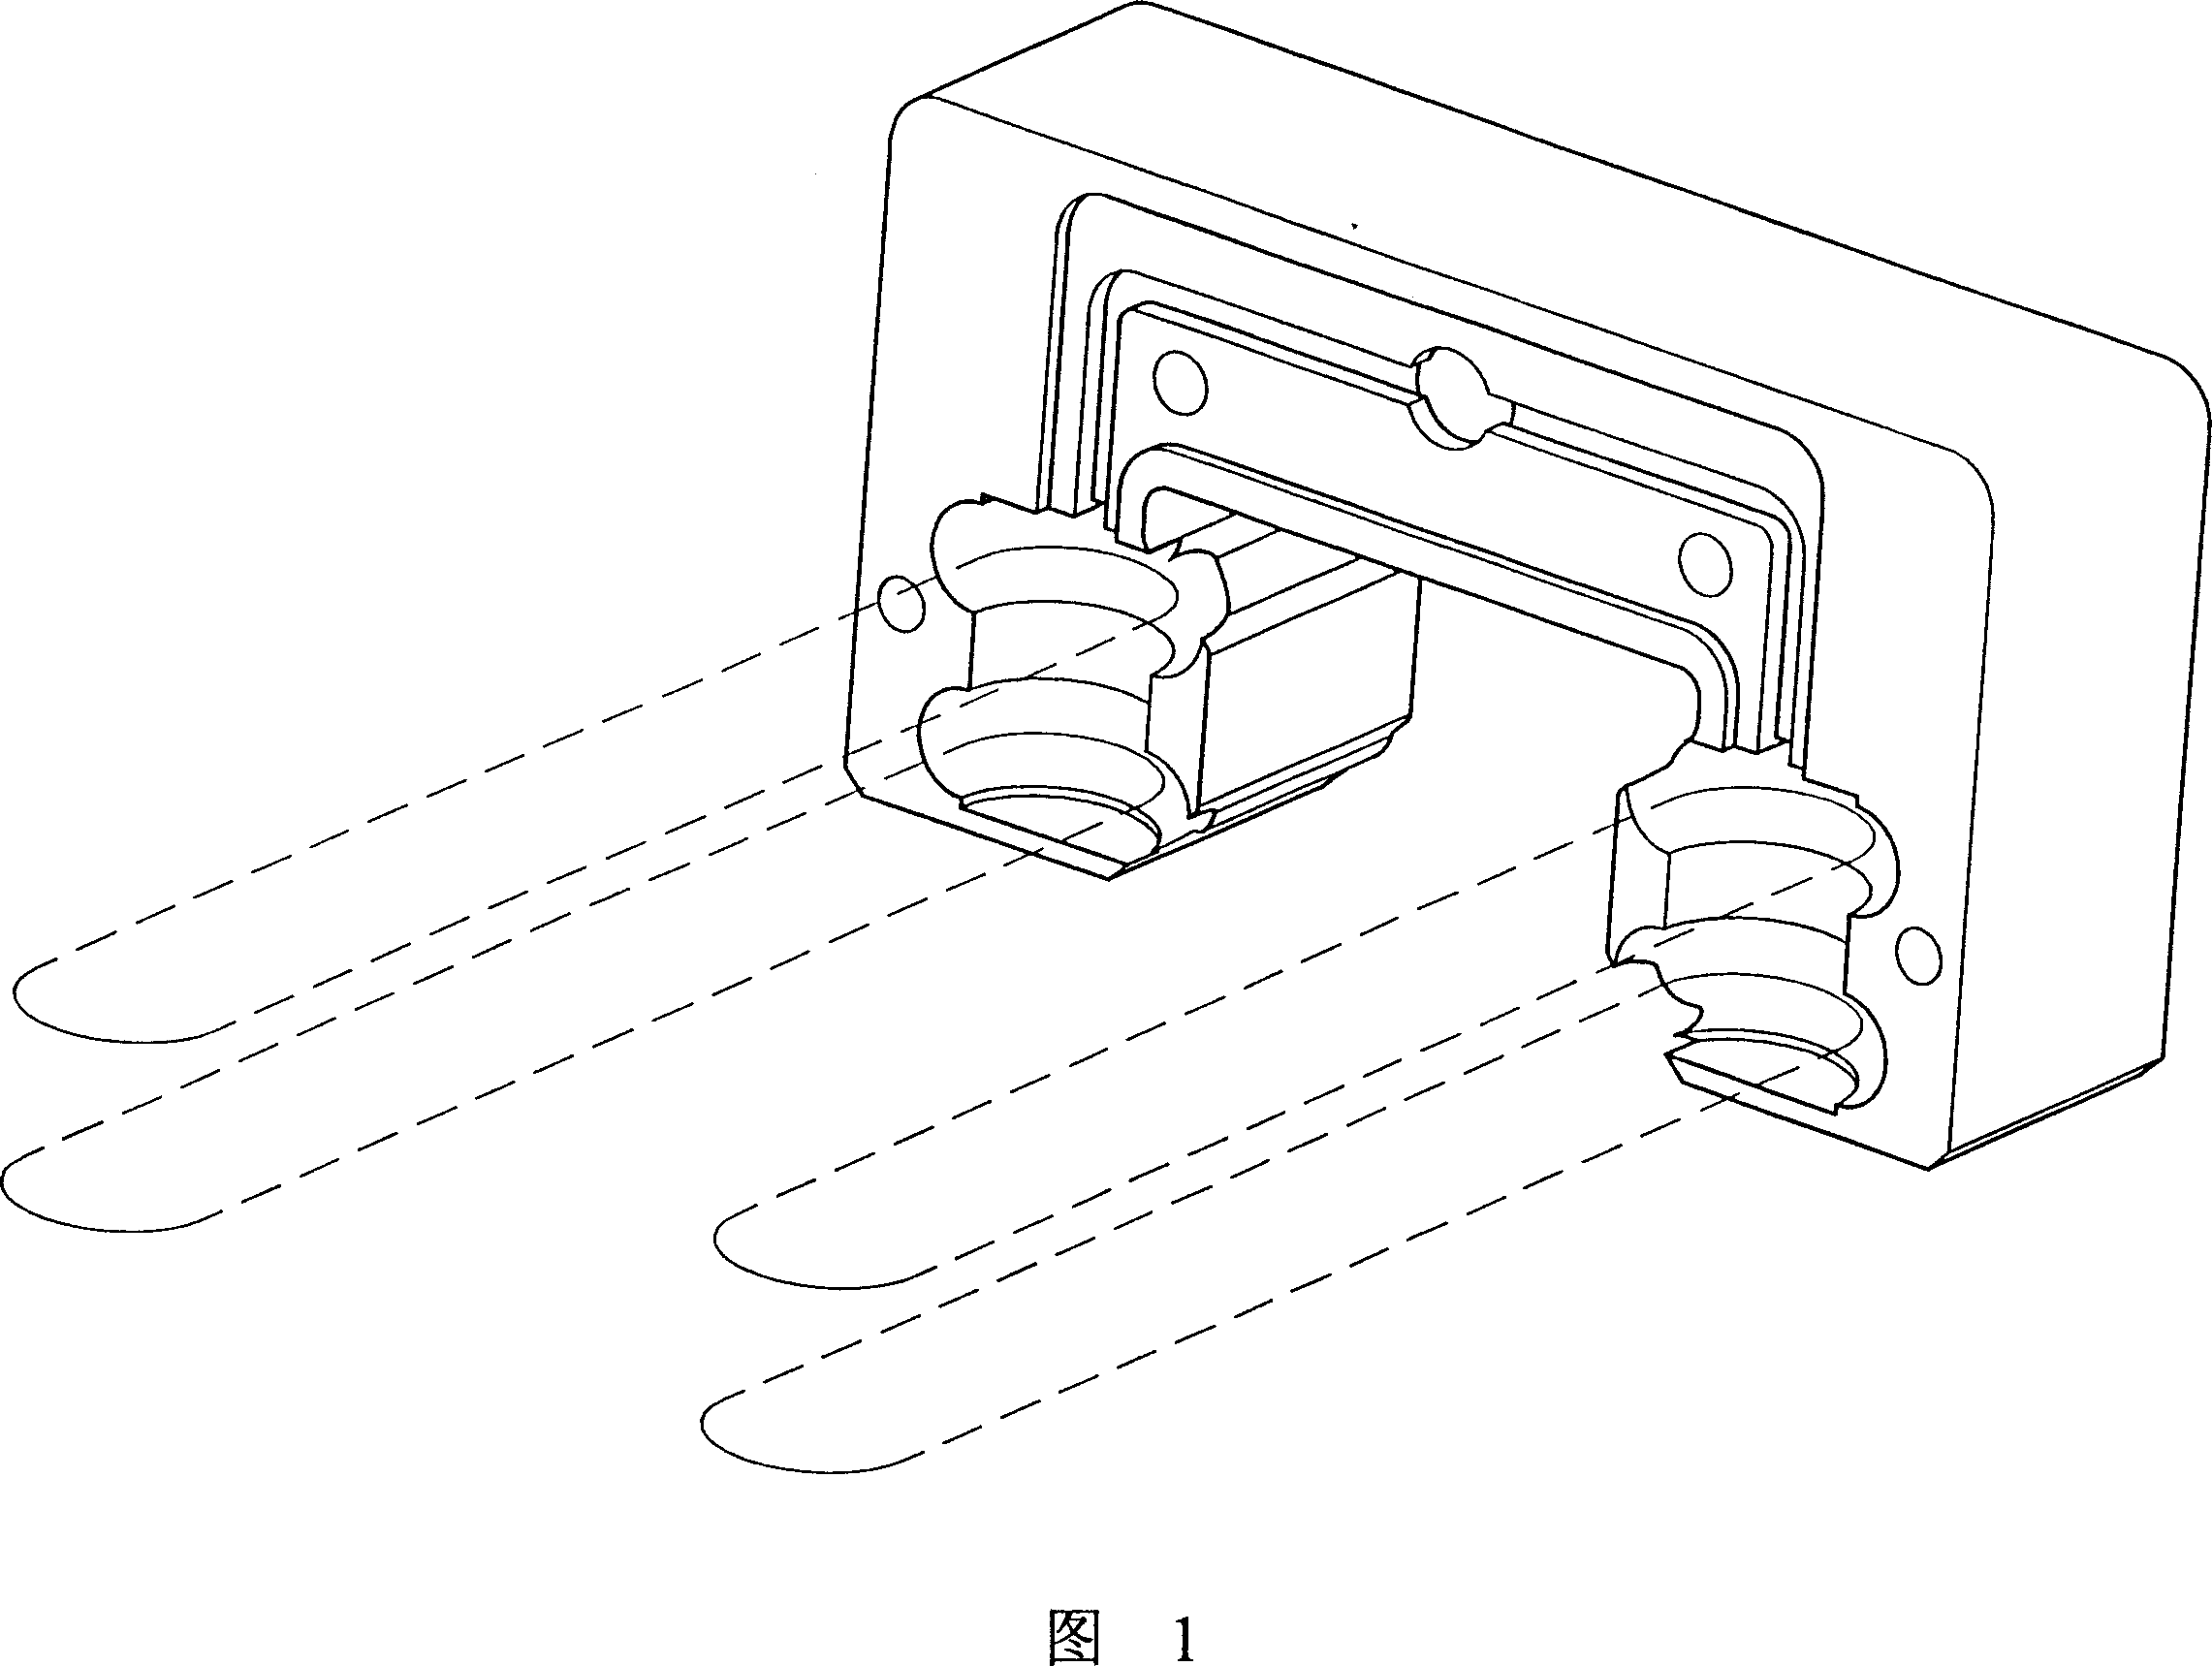 Return flow system of linear slide rail